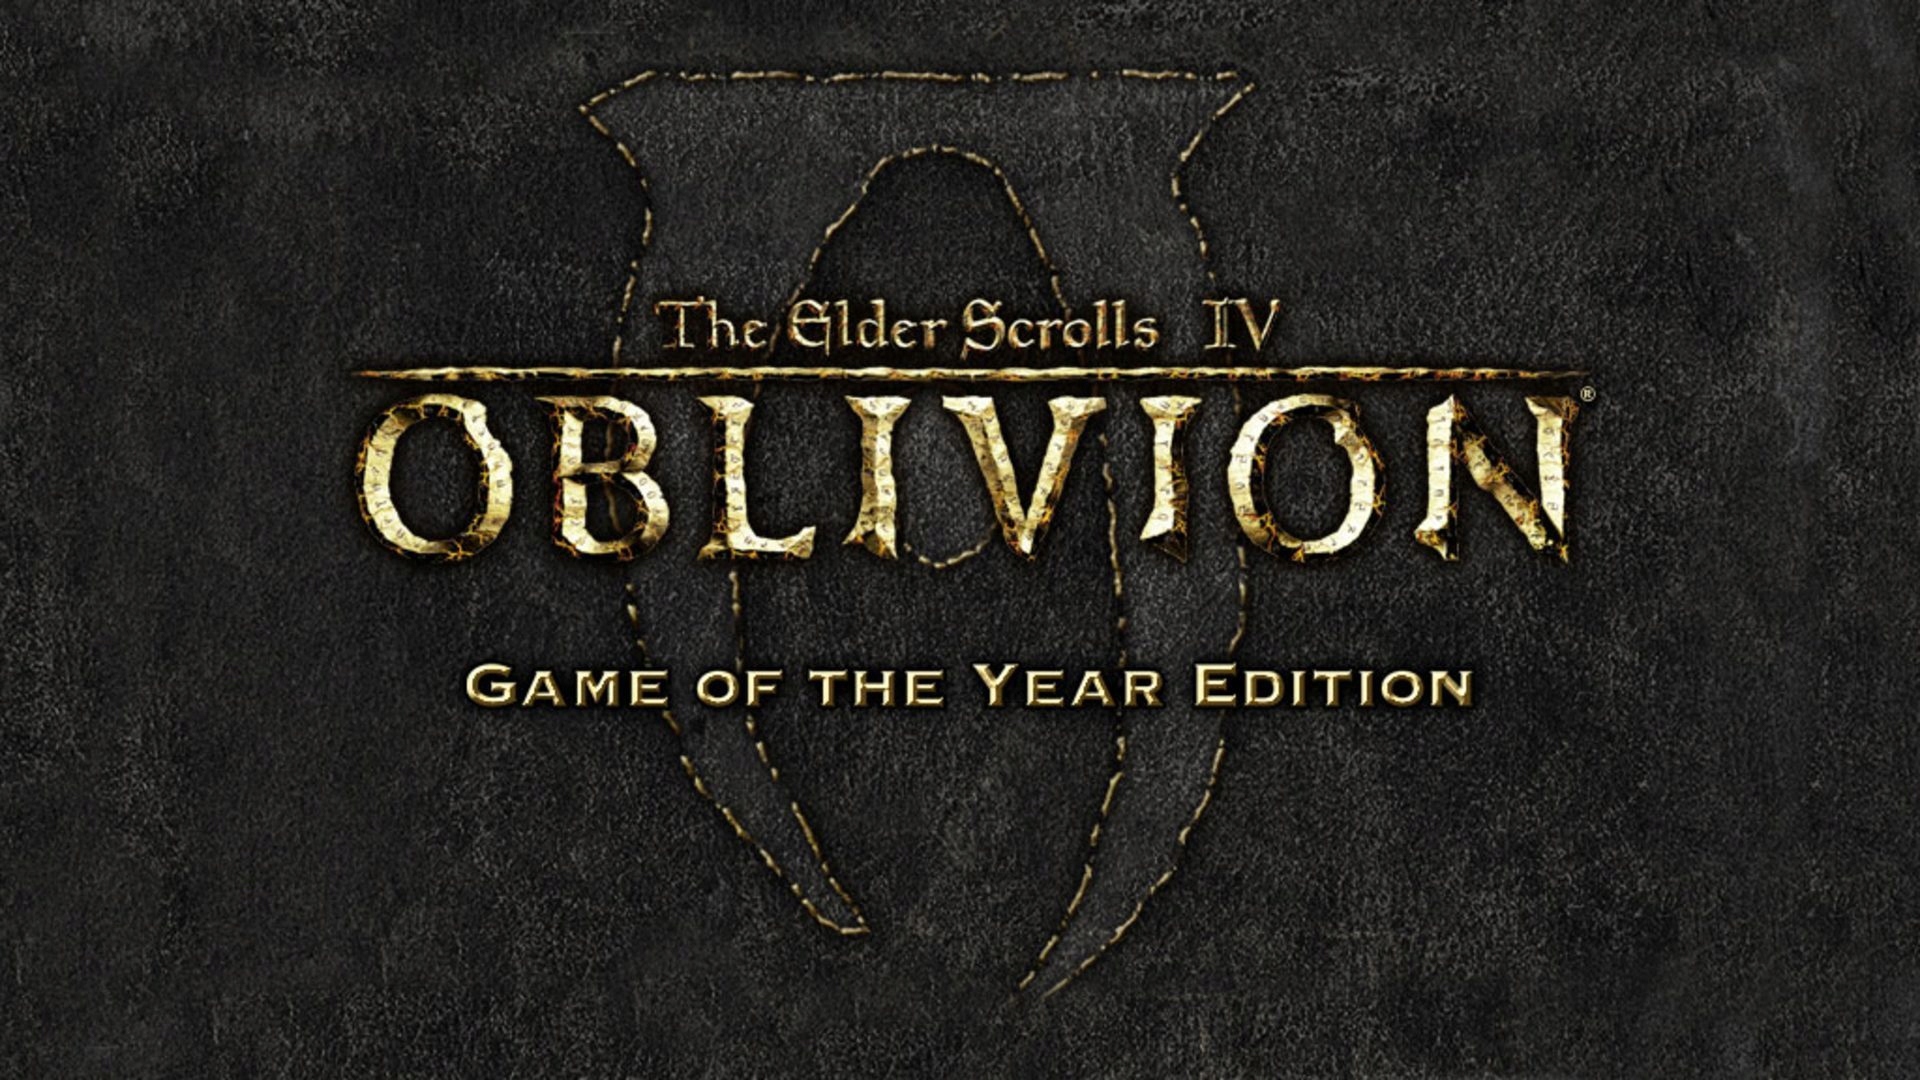 The Elder Scrolls 4: Oblivion - Прохождение, часть 27 + Medved Cup #1 + VK Play 2v2 Cup #8